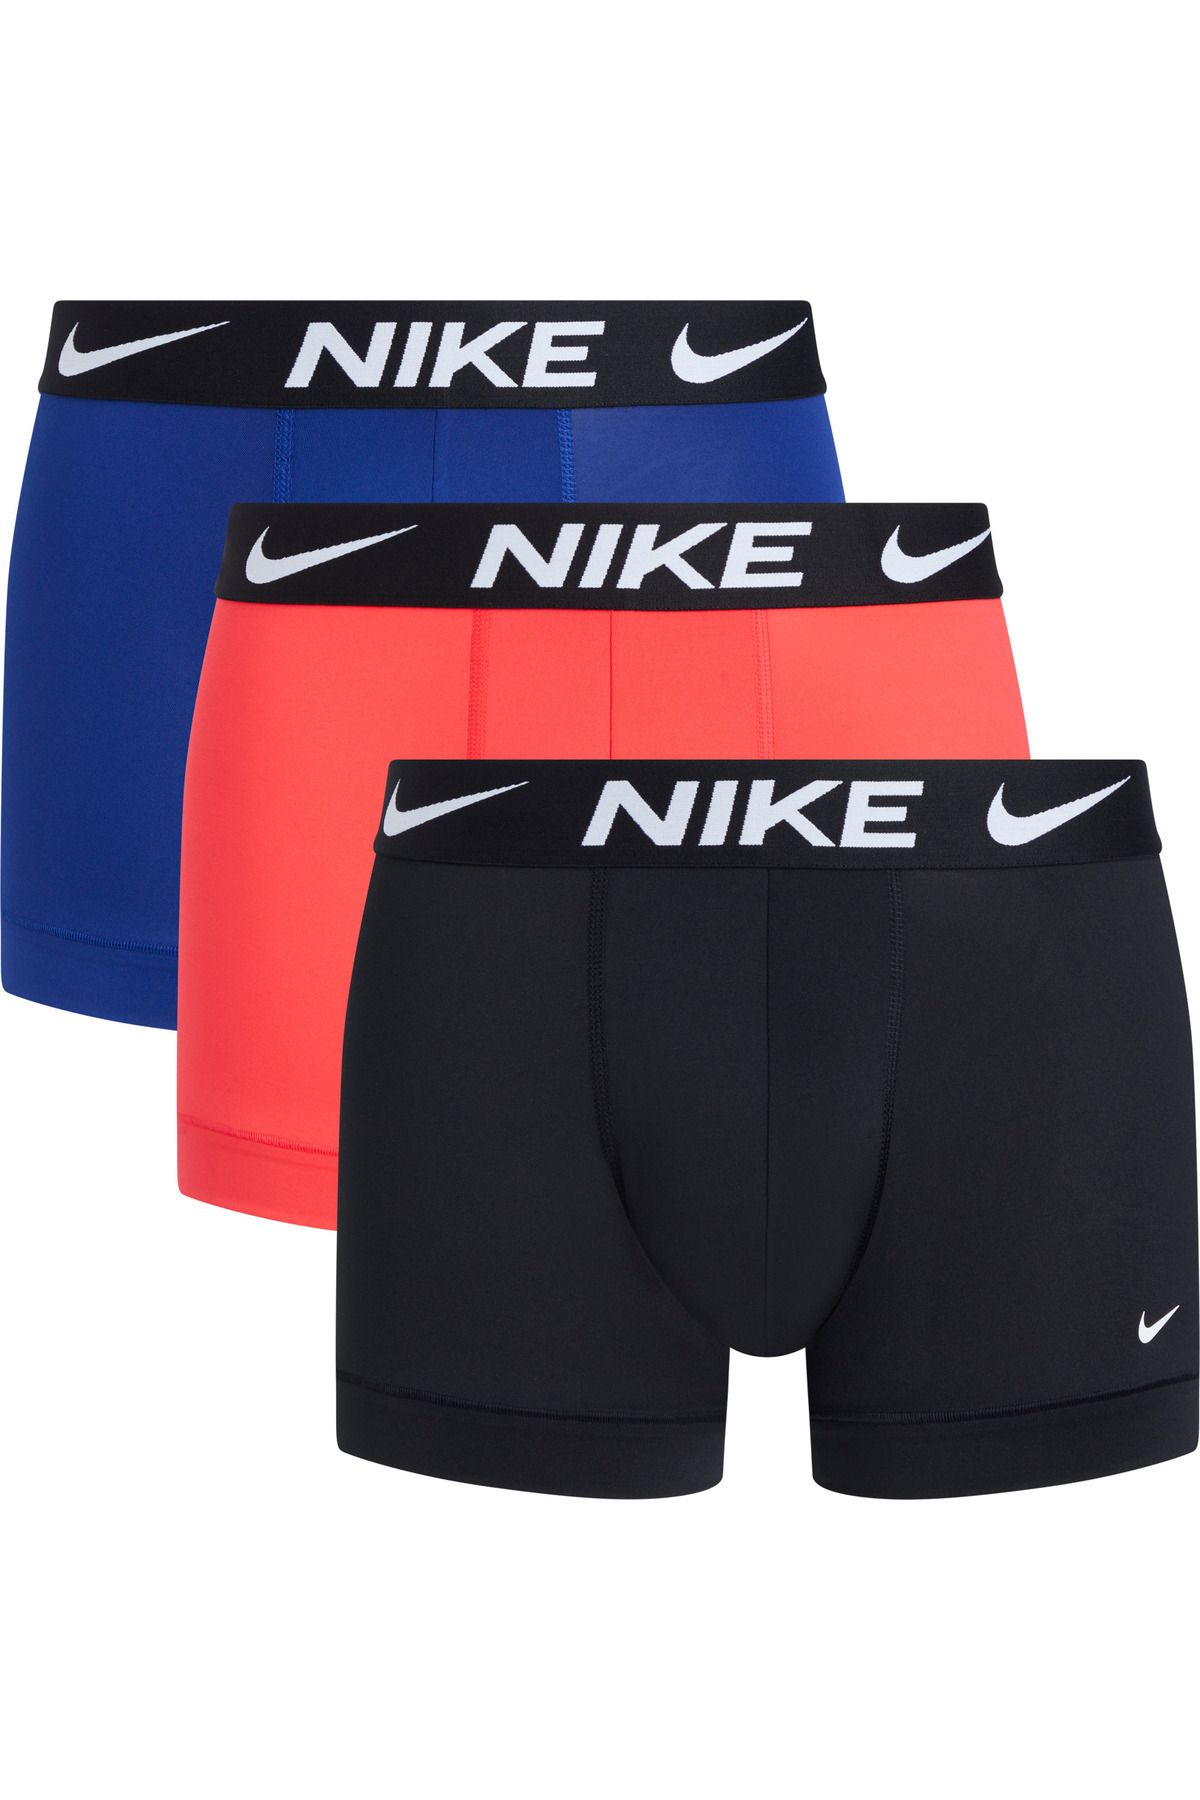 Nike Erkek Marka Logolu Elastik Bantlı Günlük Kullanıma Uygun Mavi-Siyah-Kırmızı Boxer 0000KE1156-GHC